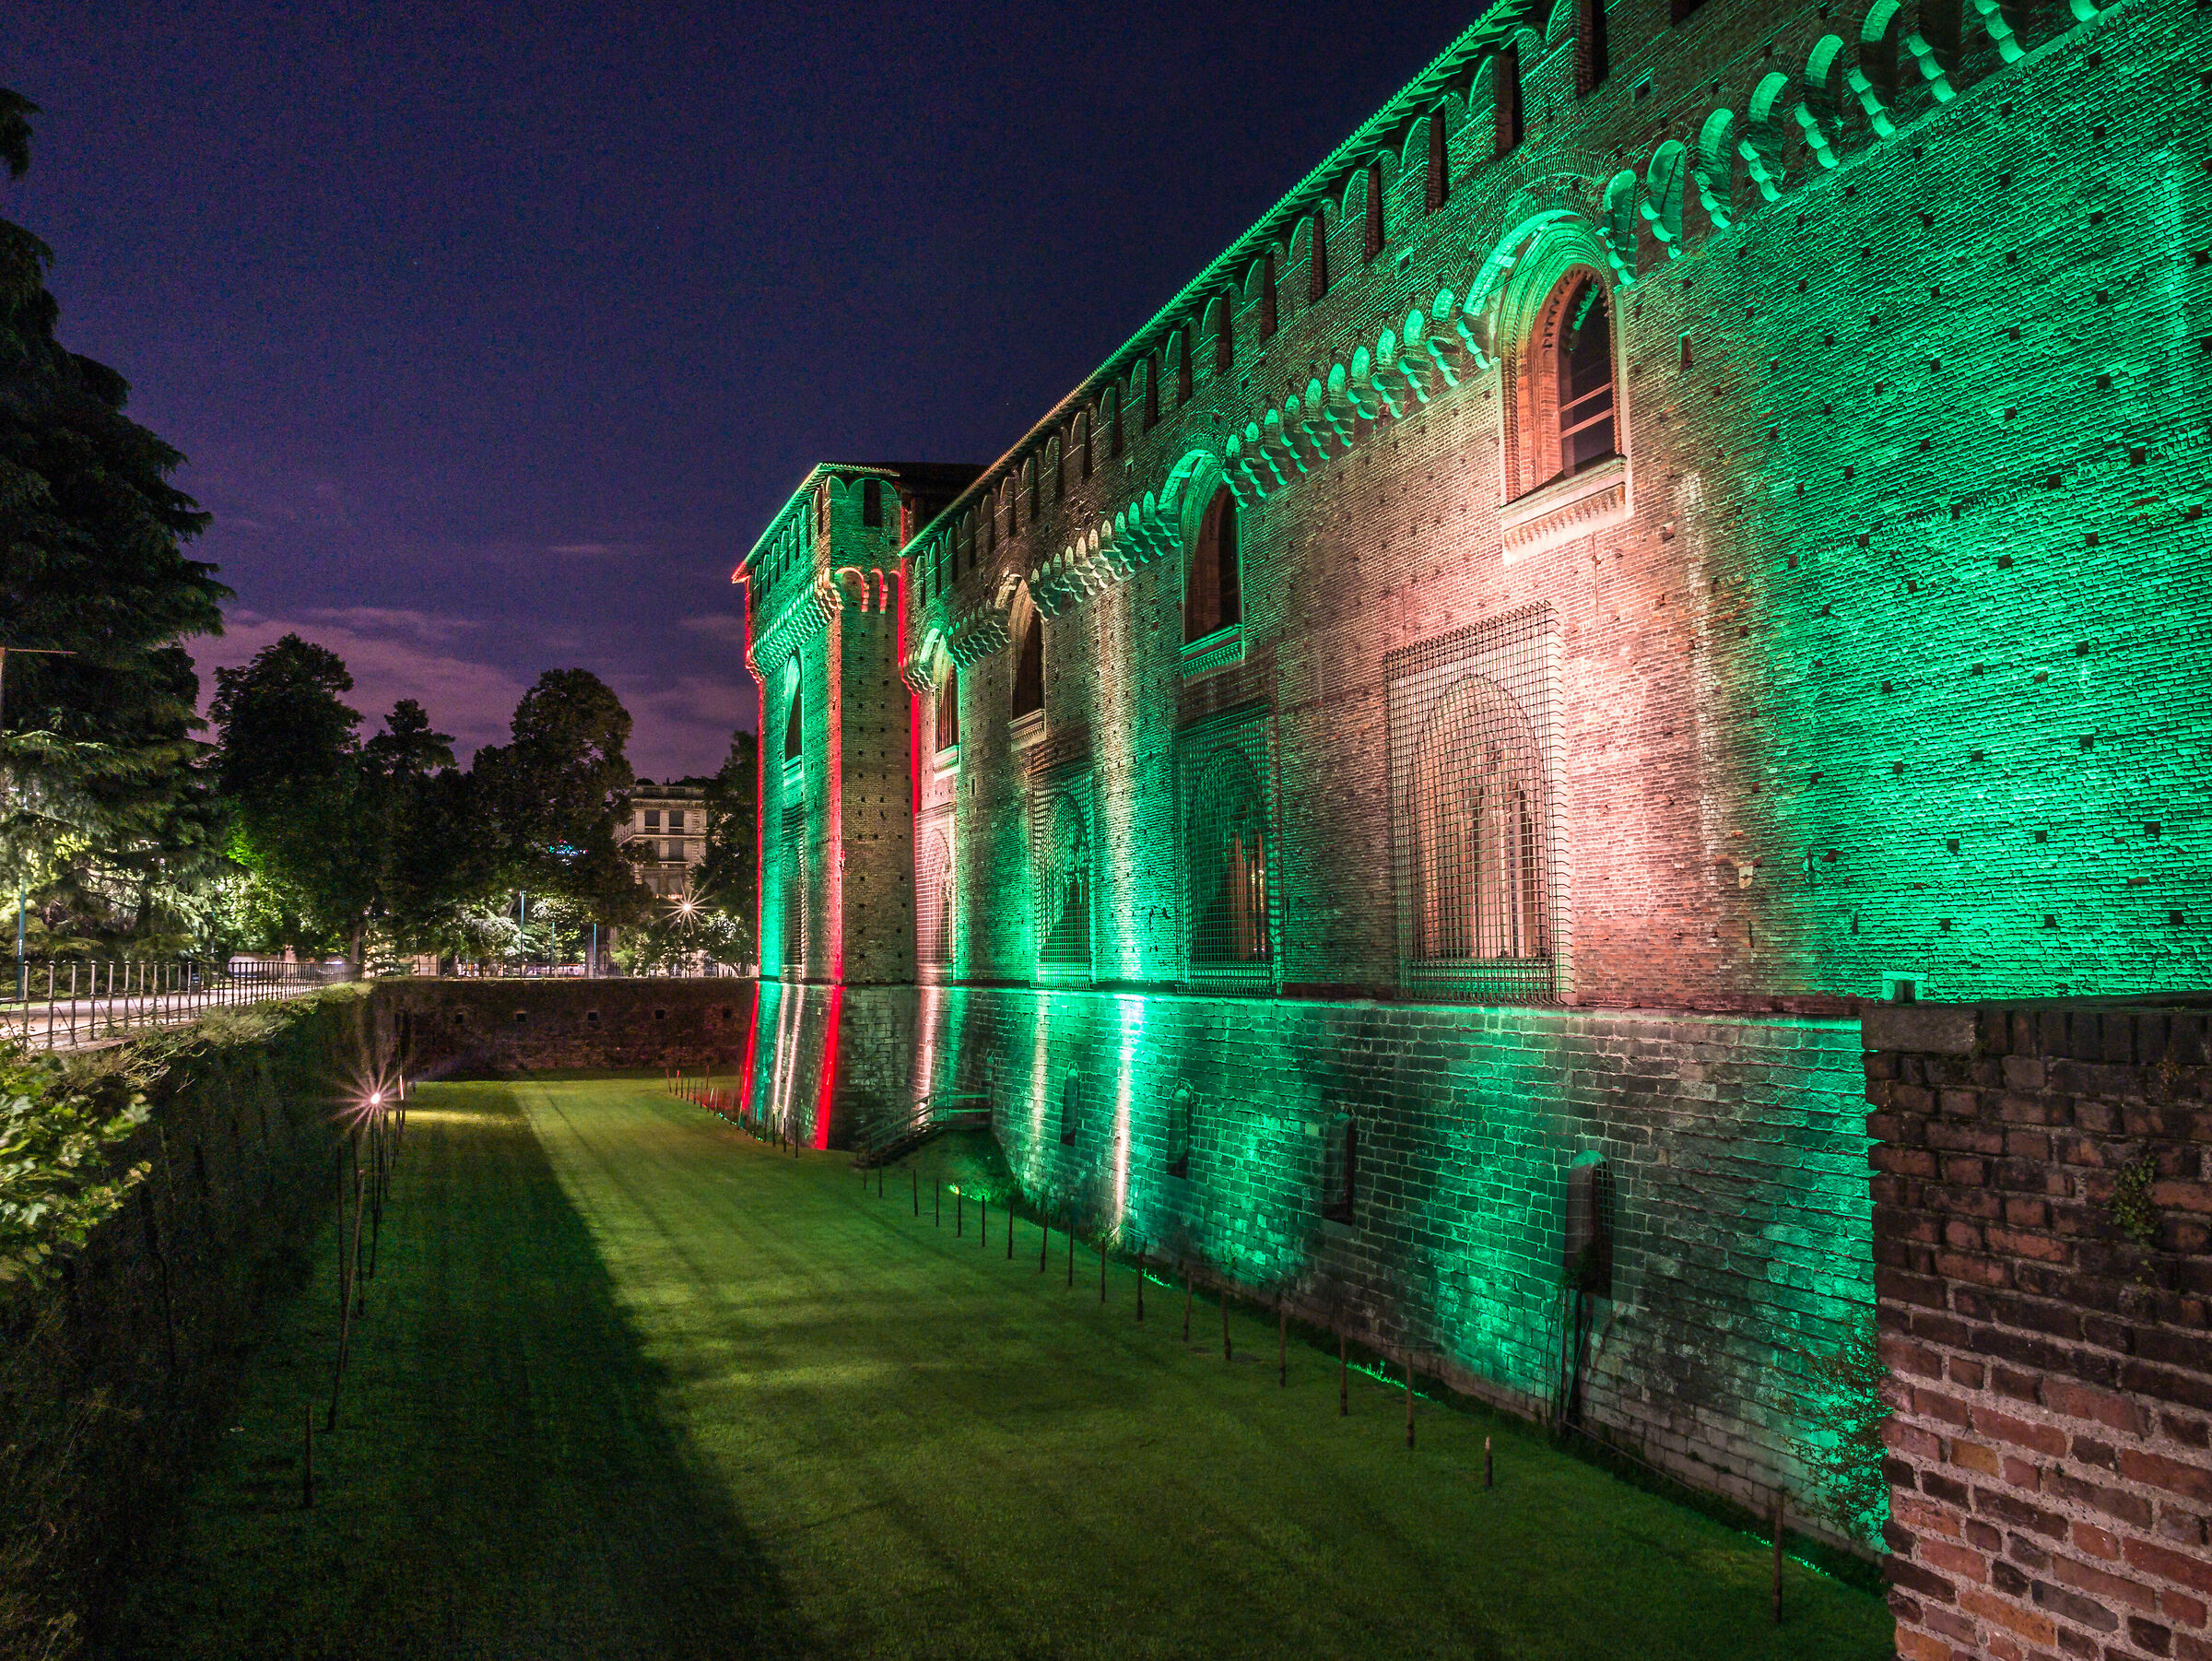 Tricolor on the castle Sforzesco - Milan...